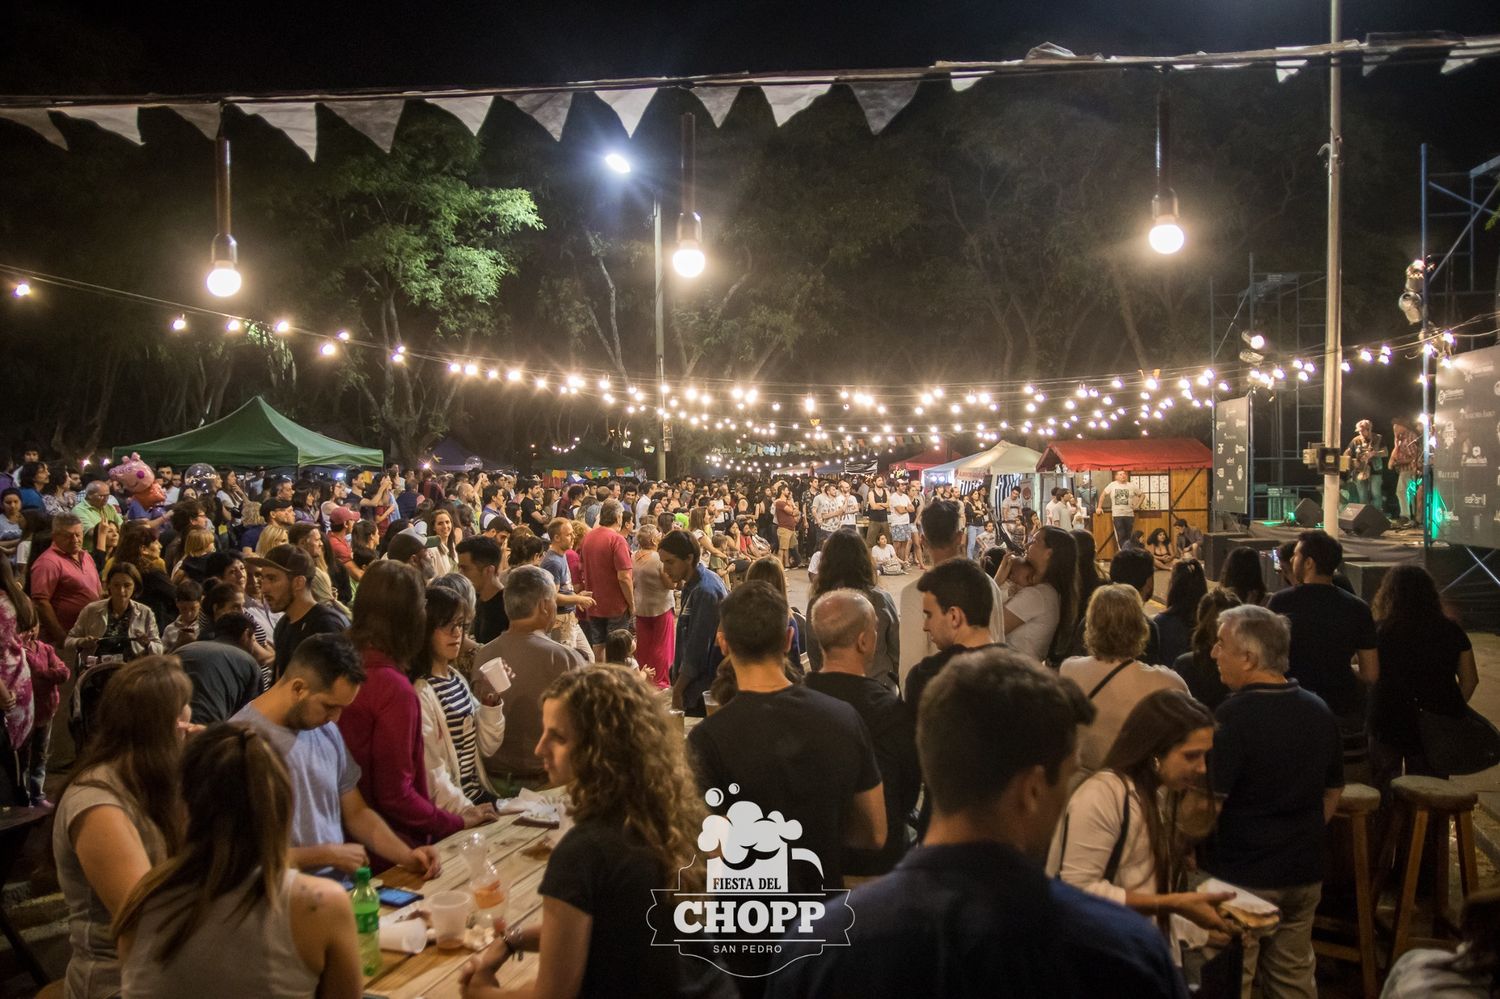 Fiesta del Chopp: cerveza artesanal y shows este fin de semana en Paseo Público